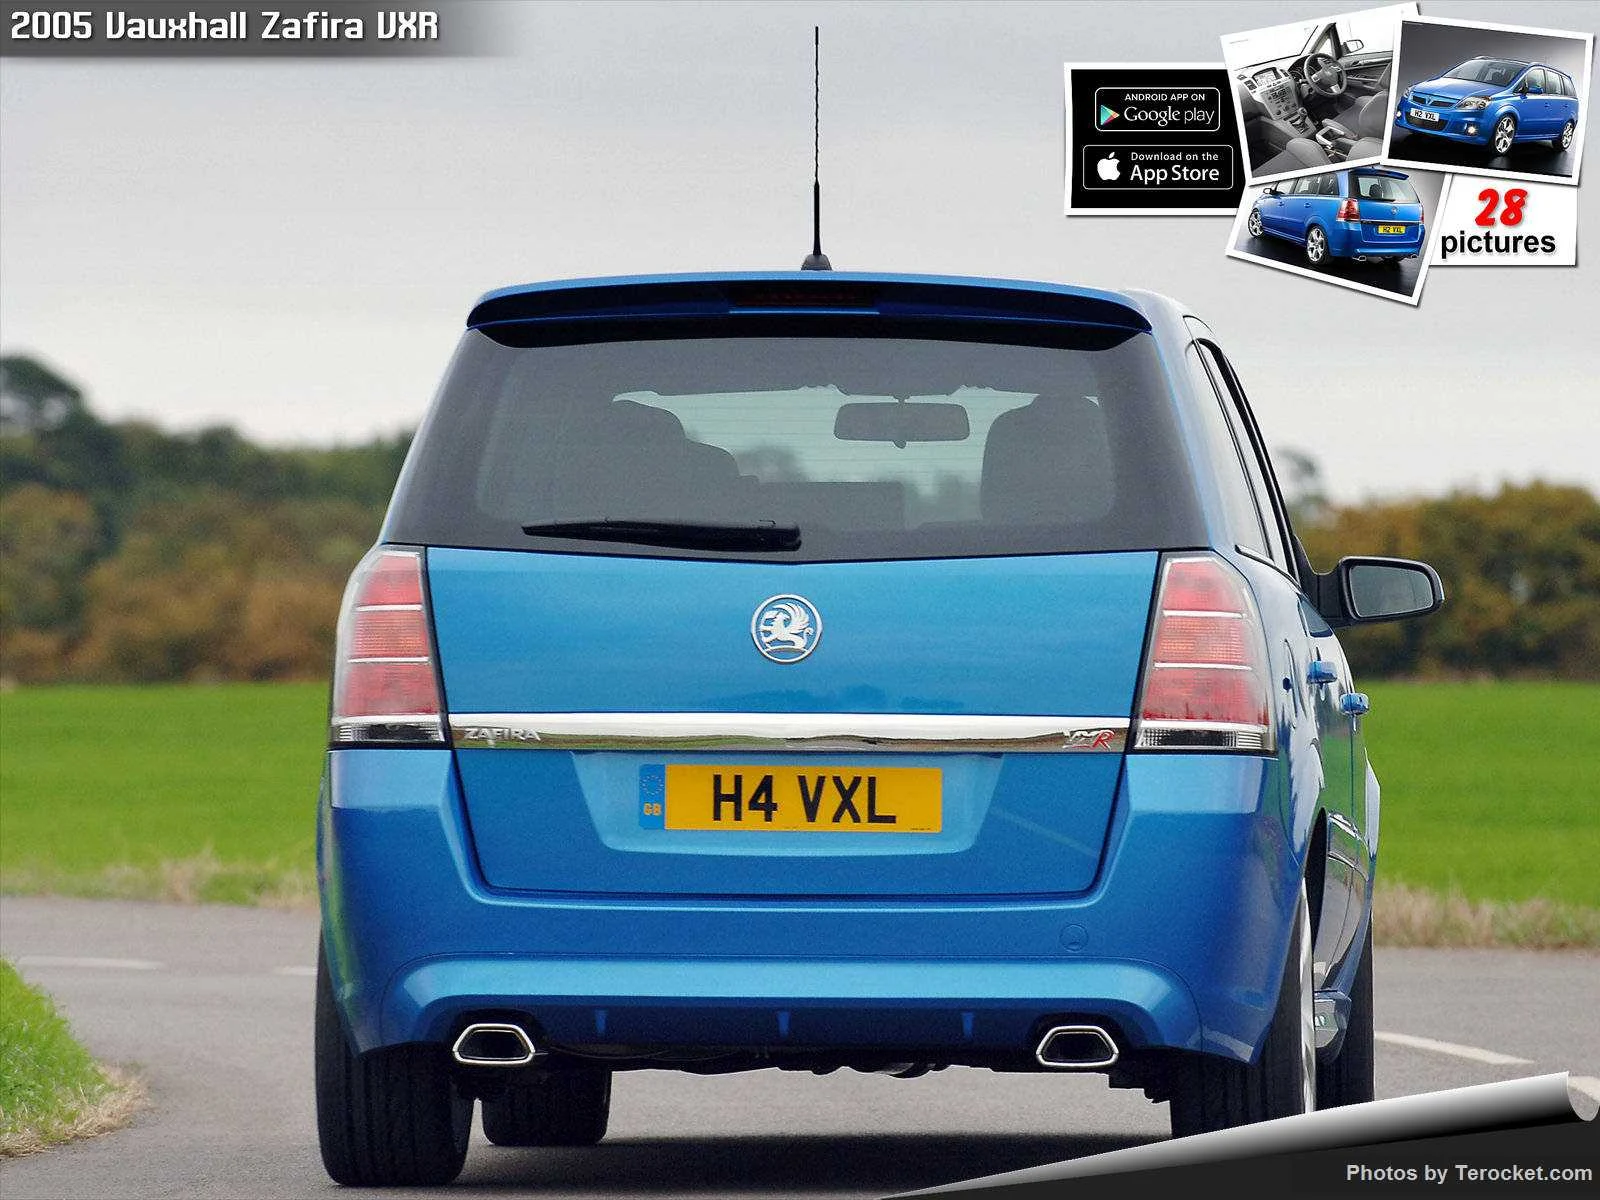 Hình ảnh xe ô tô Vauxhall Zafira VXR 2005 & nội ngoại thất